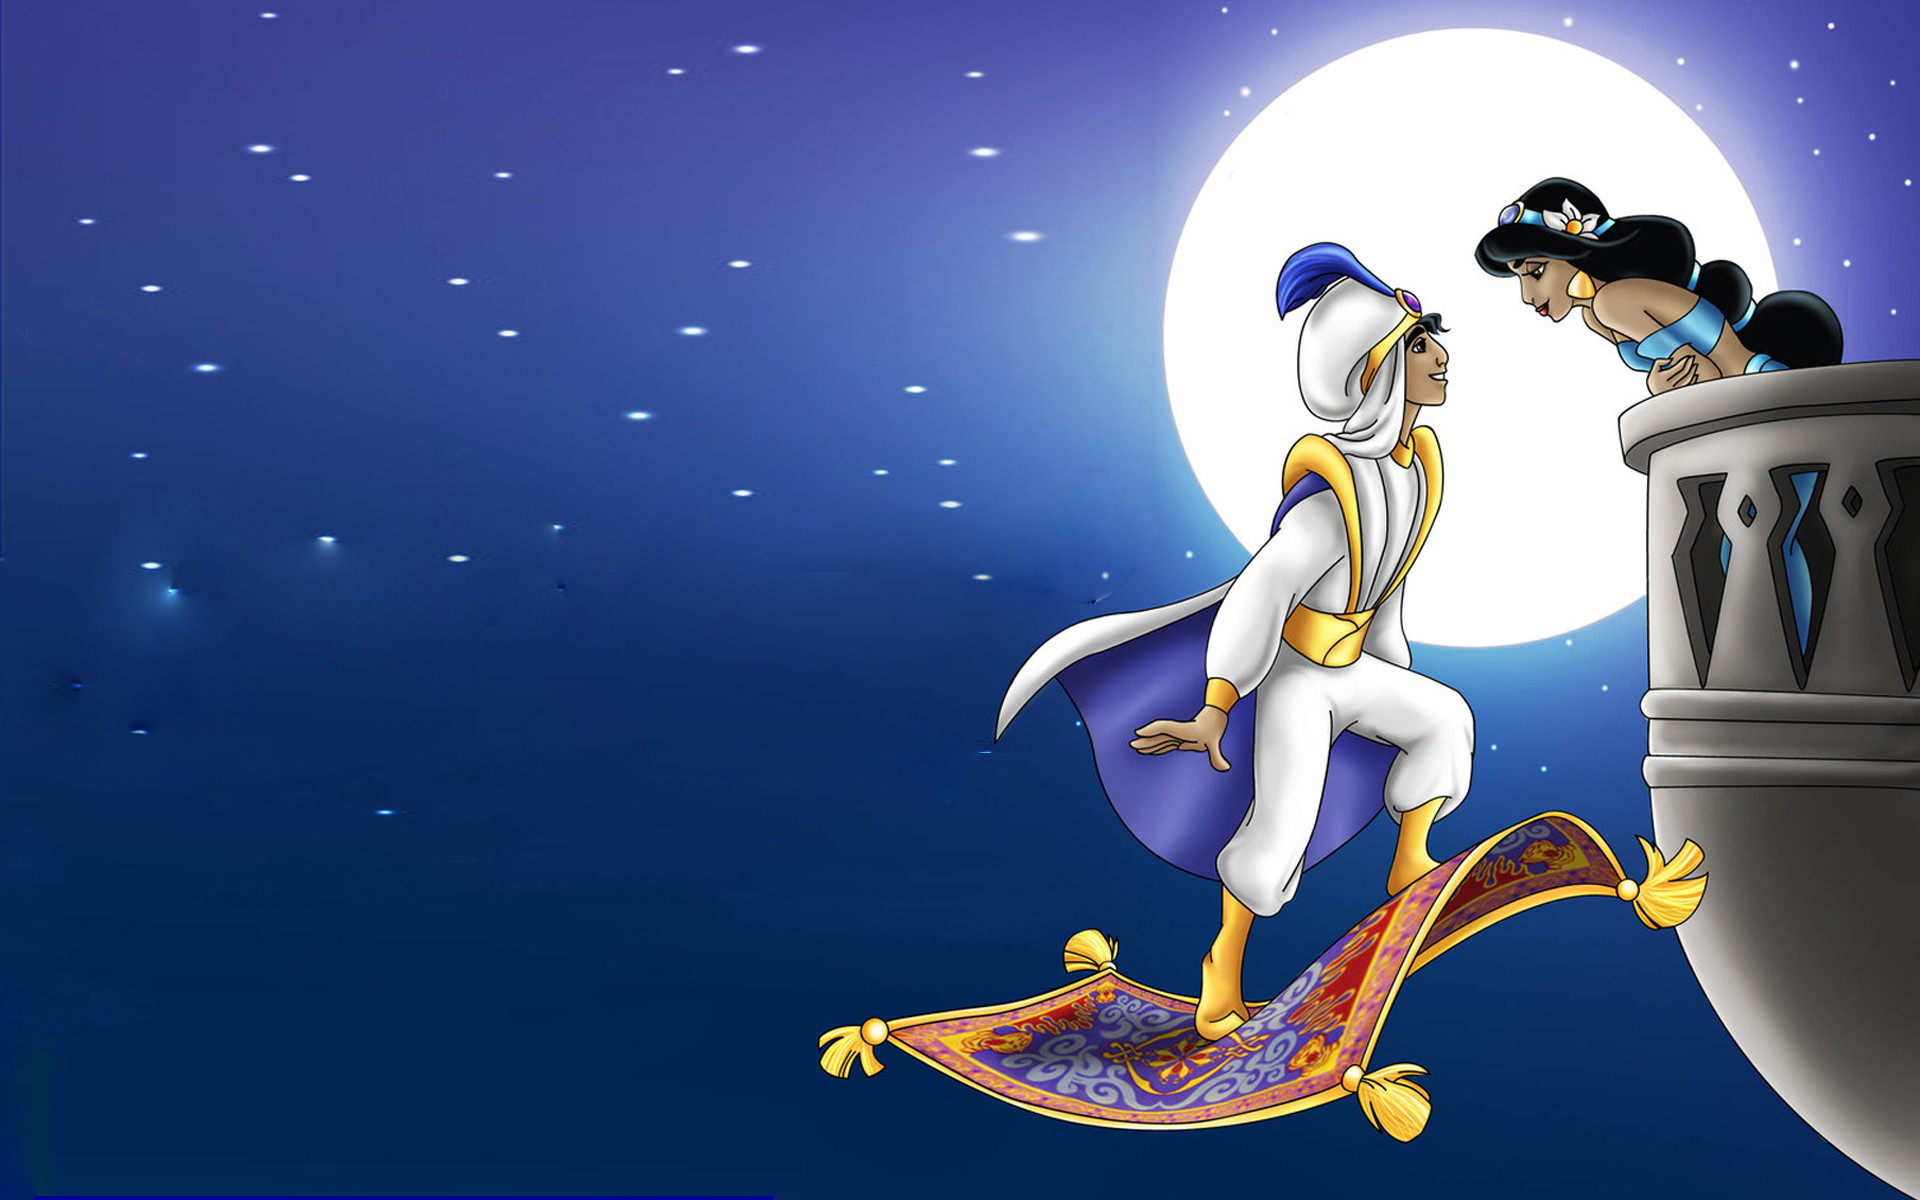 1920x1200 Aladdin And Princess Jasmine Romantic Night Full Moon Hd Wallpaper 1920Ã1200